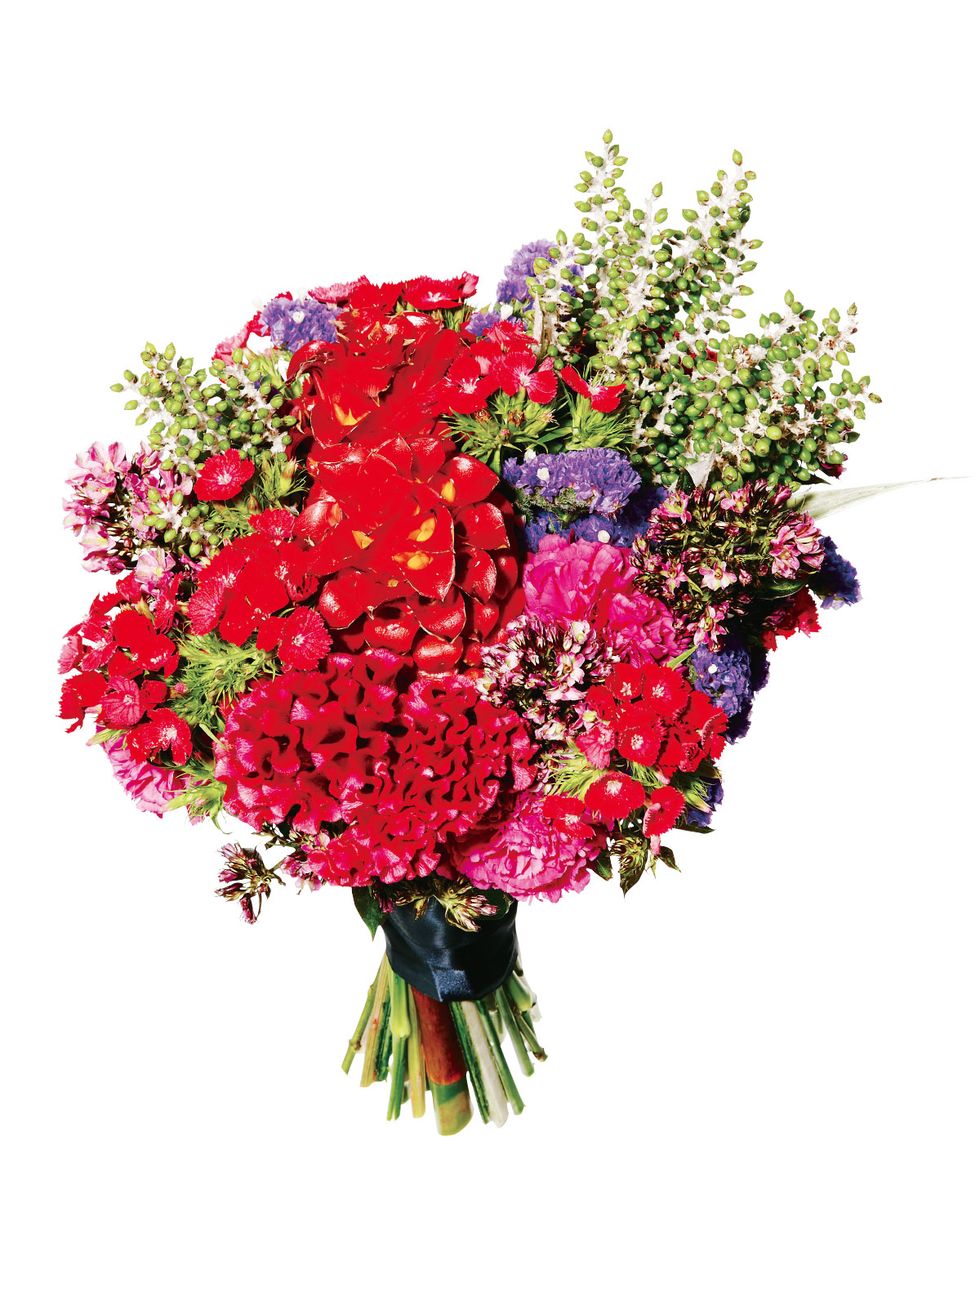 Flower, Bouquet, Cut flowers, Plant, Flower Arranging, Floristry, Flowering plant, Floral design, Pink, Artificial flower, 